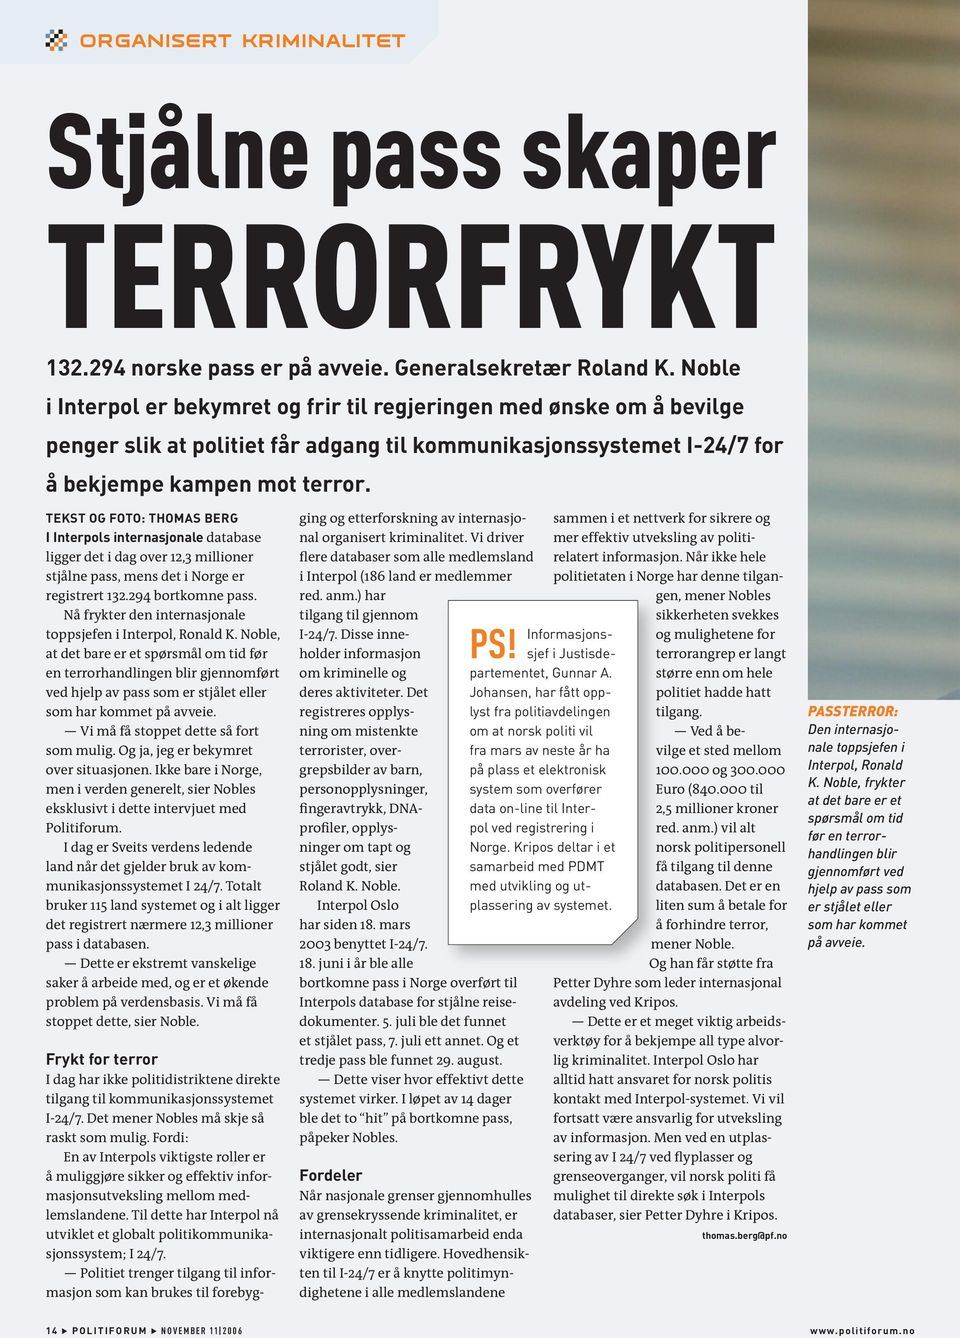 TEKST OG FOTO: THOMAS BERG I Interpols internasjonale database ligger det i dag over 12,3 millioner stjålne pass, mens det i Norge er registrert 132.294 bortkomne pass.